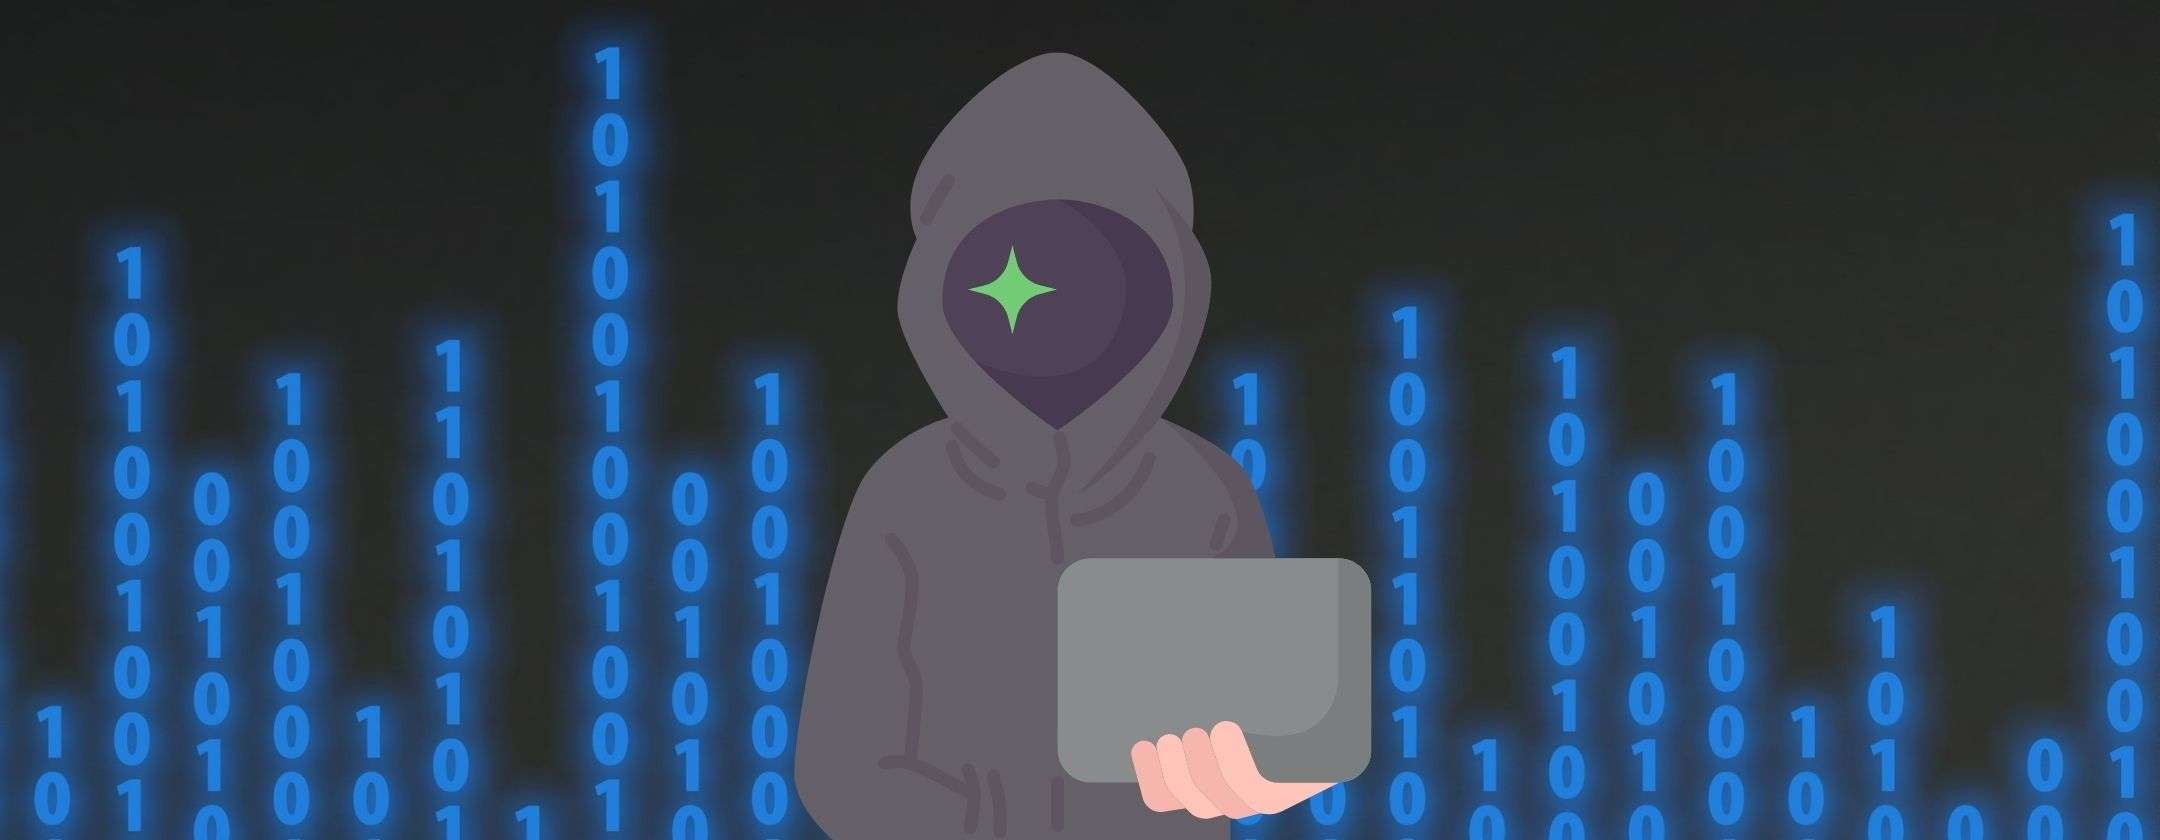 Cybercriminali: come agiscono e perché sono pericolosi